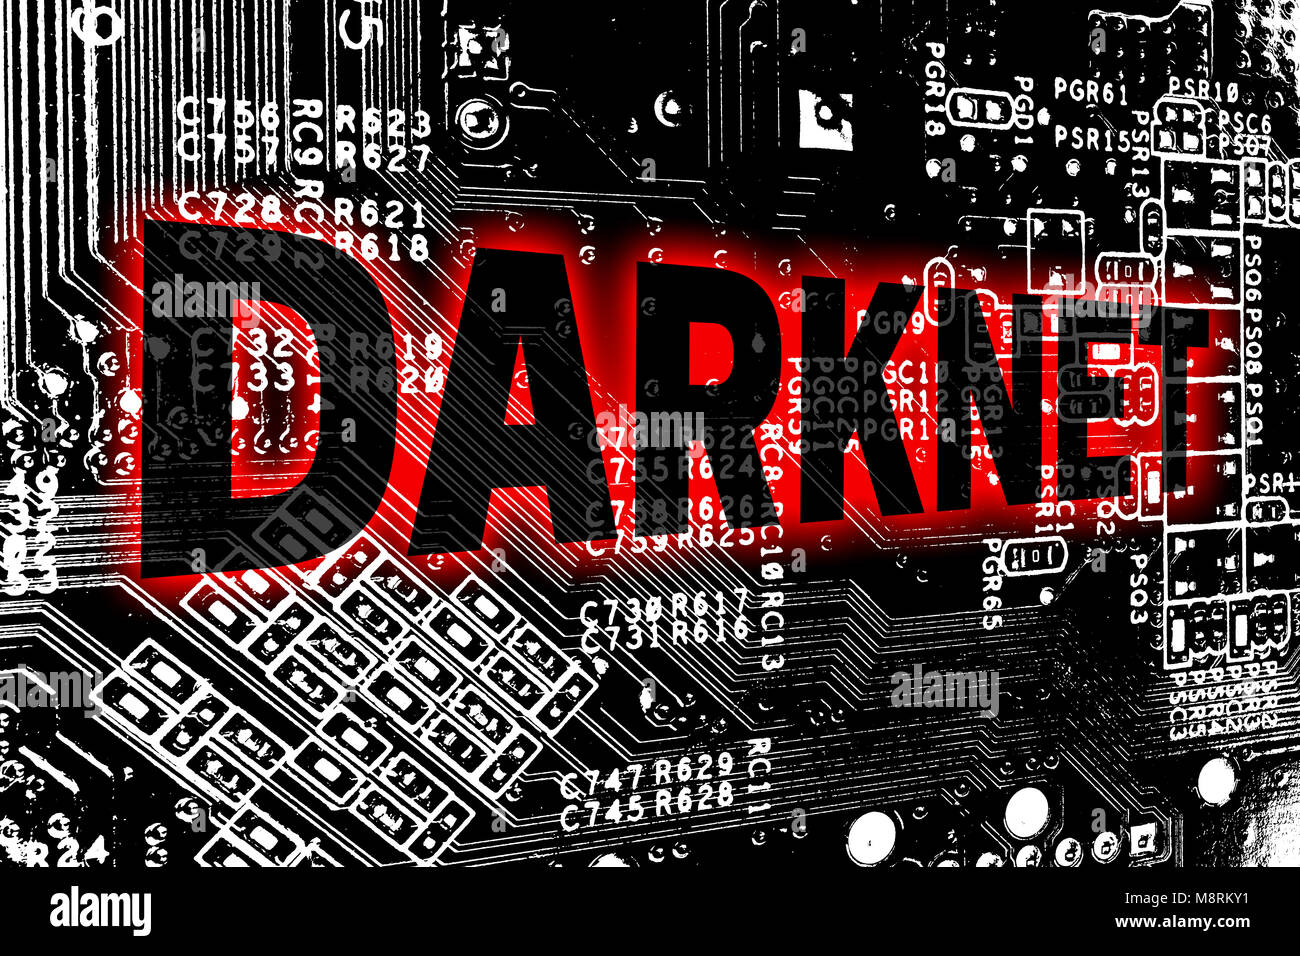 Xanax Darknet Markets Reddit